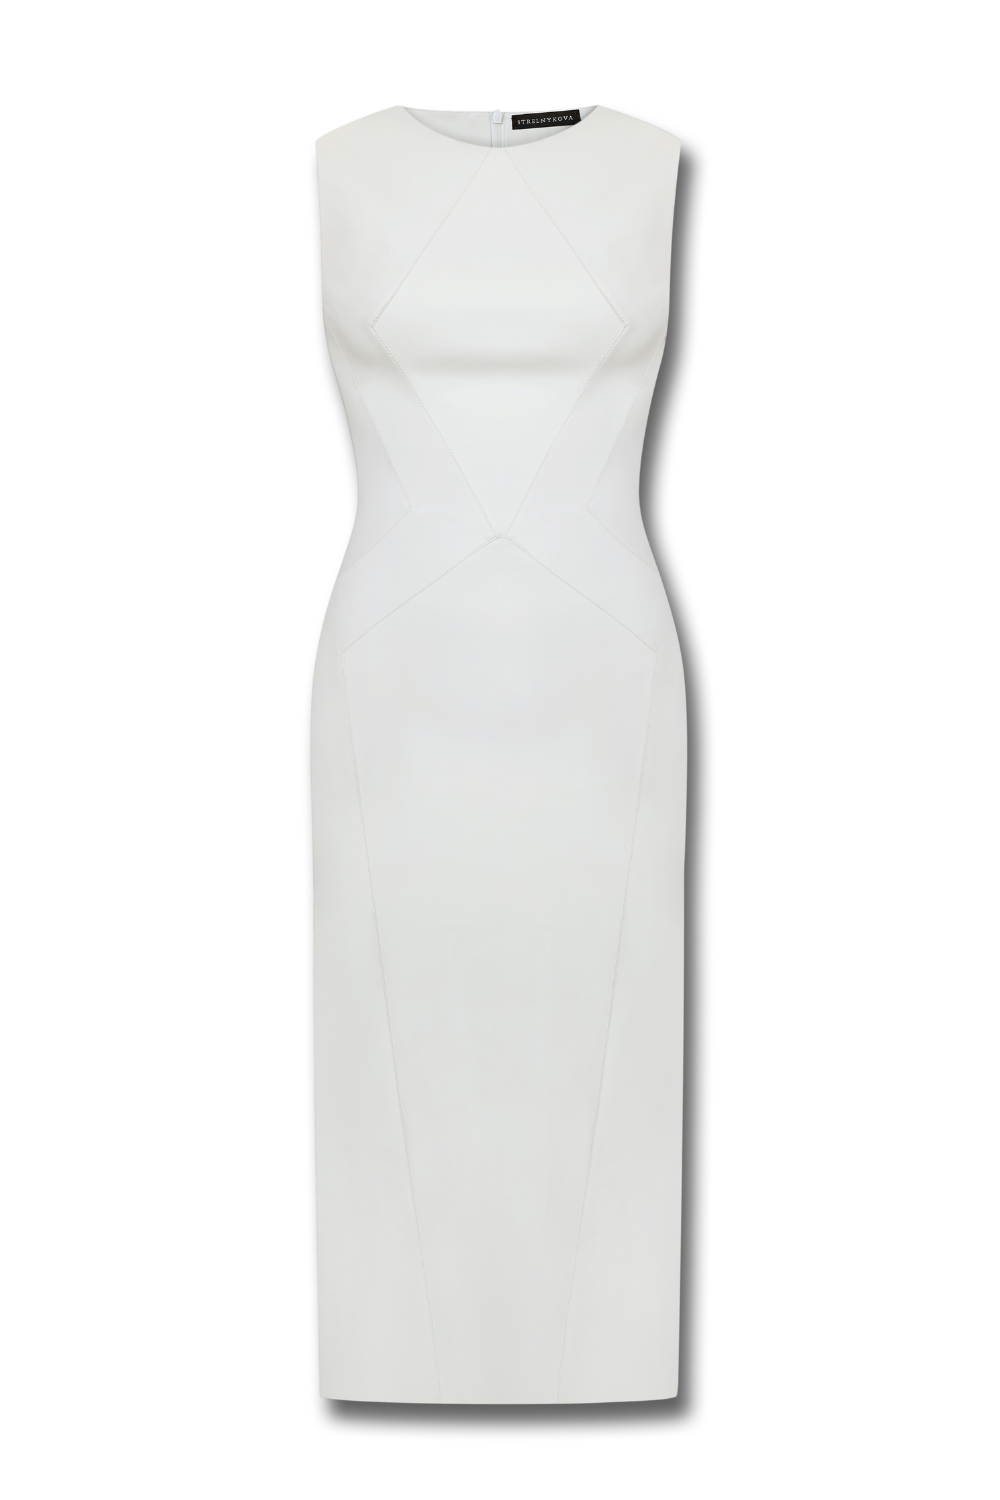 Сукня з екошкіри, біла, (Стрельнікова), А017-813